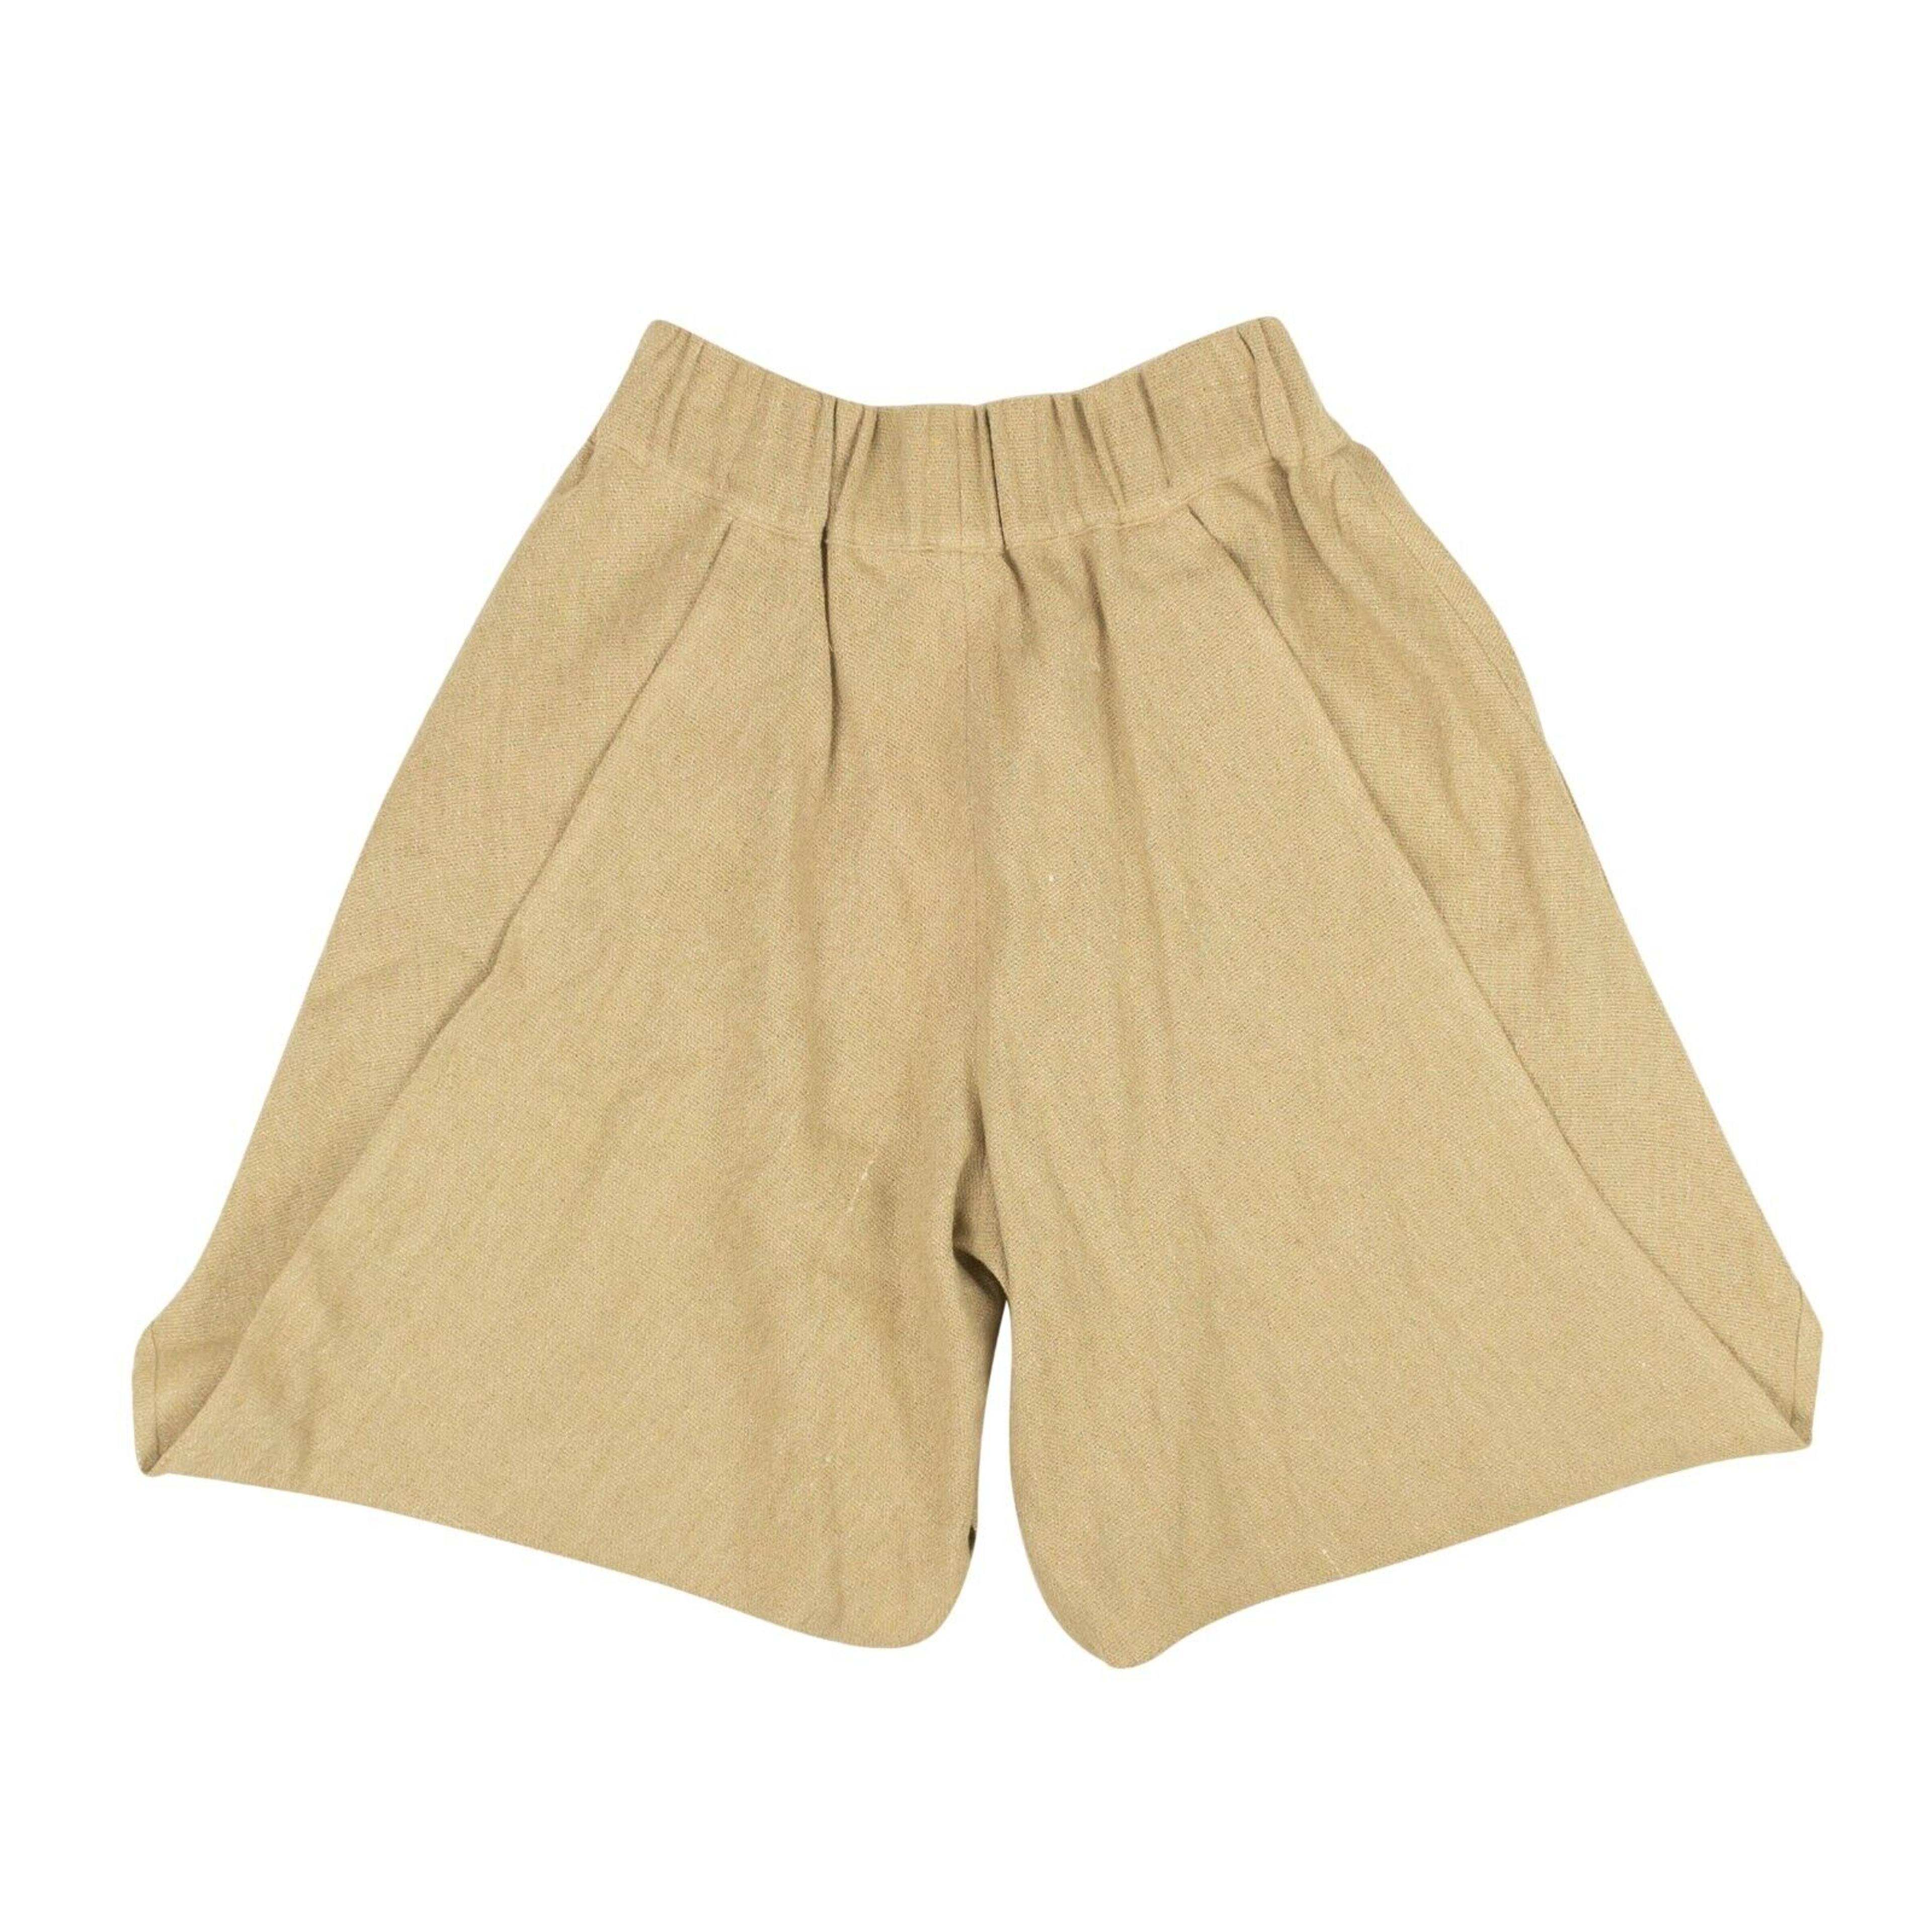 Alternate View 2 of Beige Linen Blend Shorts